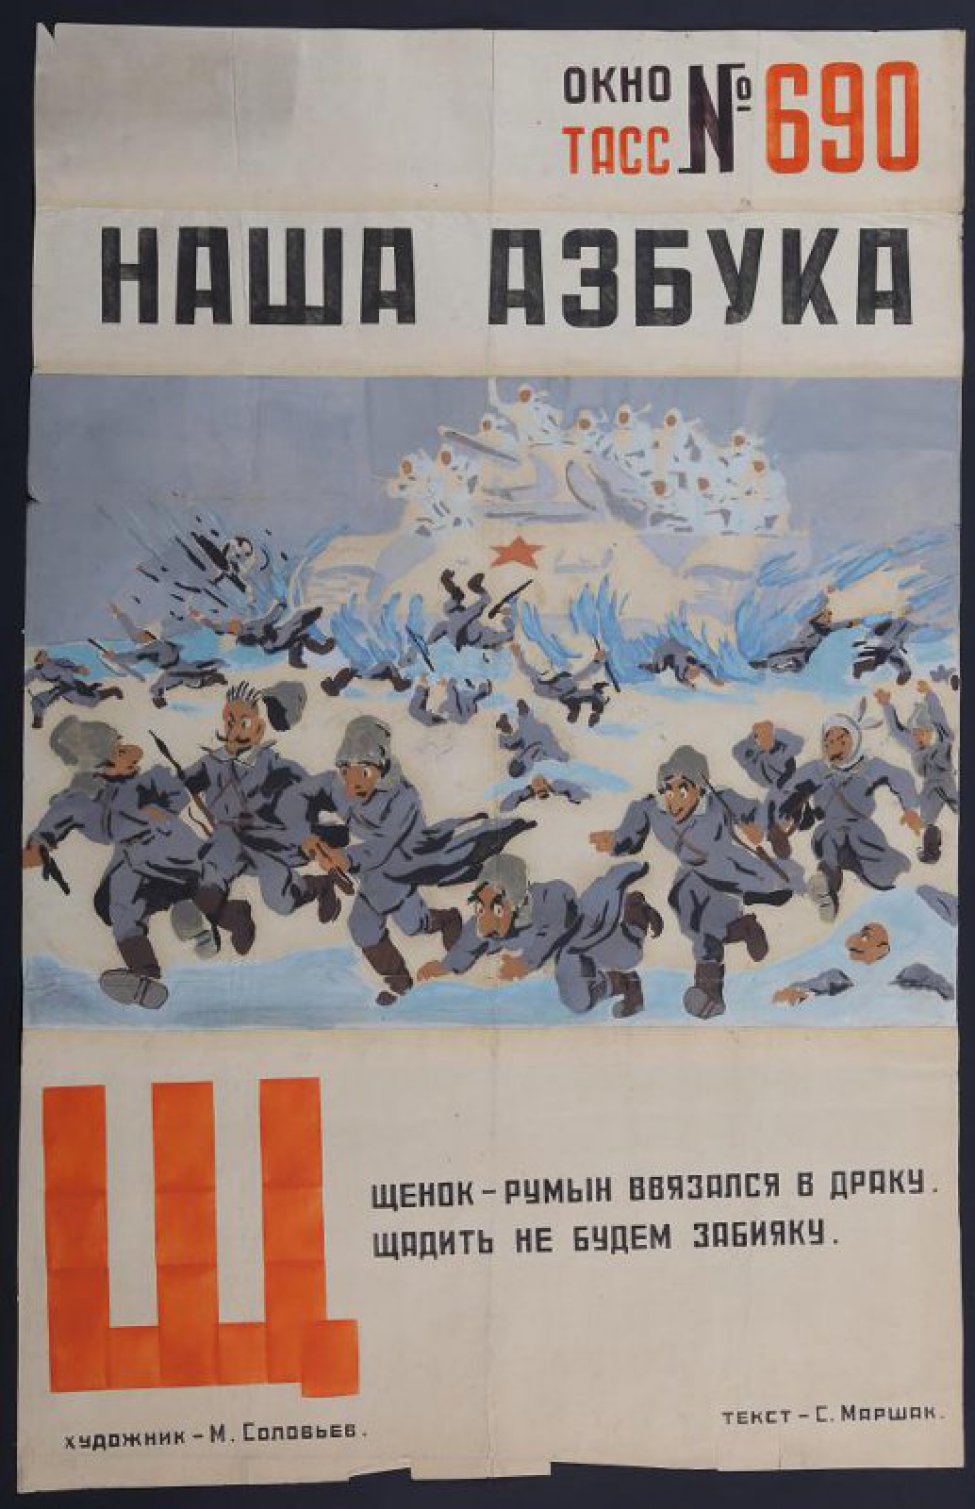 Изображены румынские солдаты Гитлера, бегущие по снегу от советских воинов , текст: С...Маршака: "  Щенок- румын ввязался в драку..."